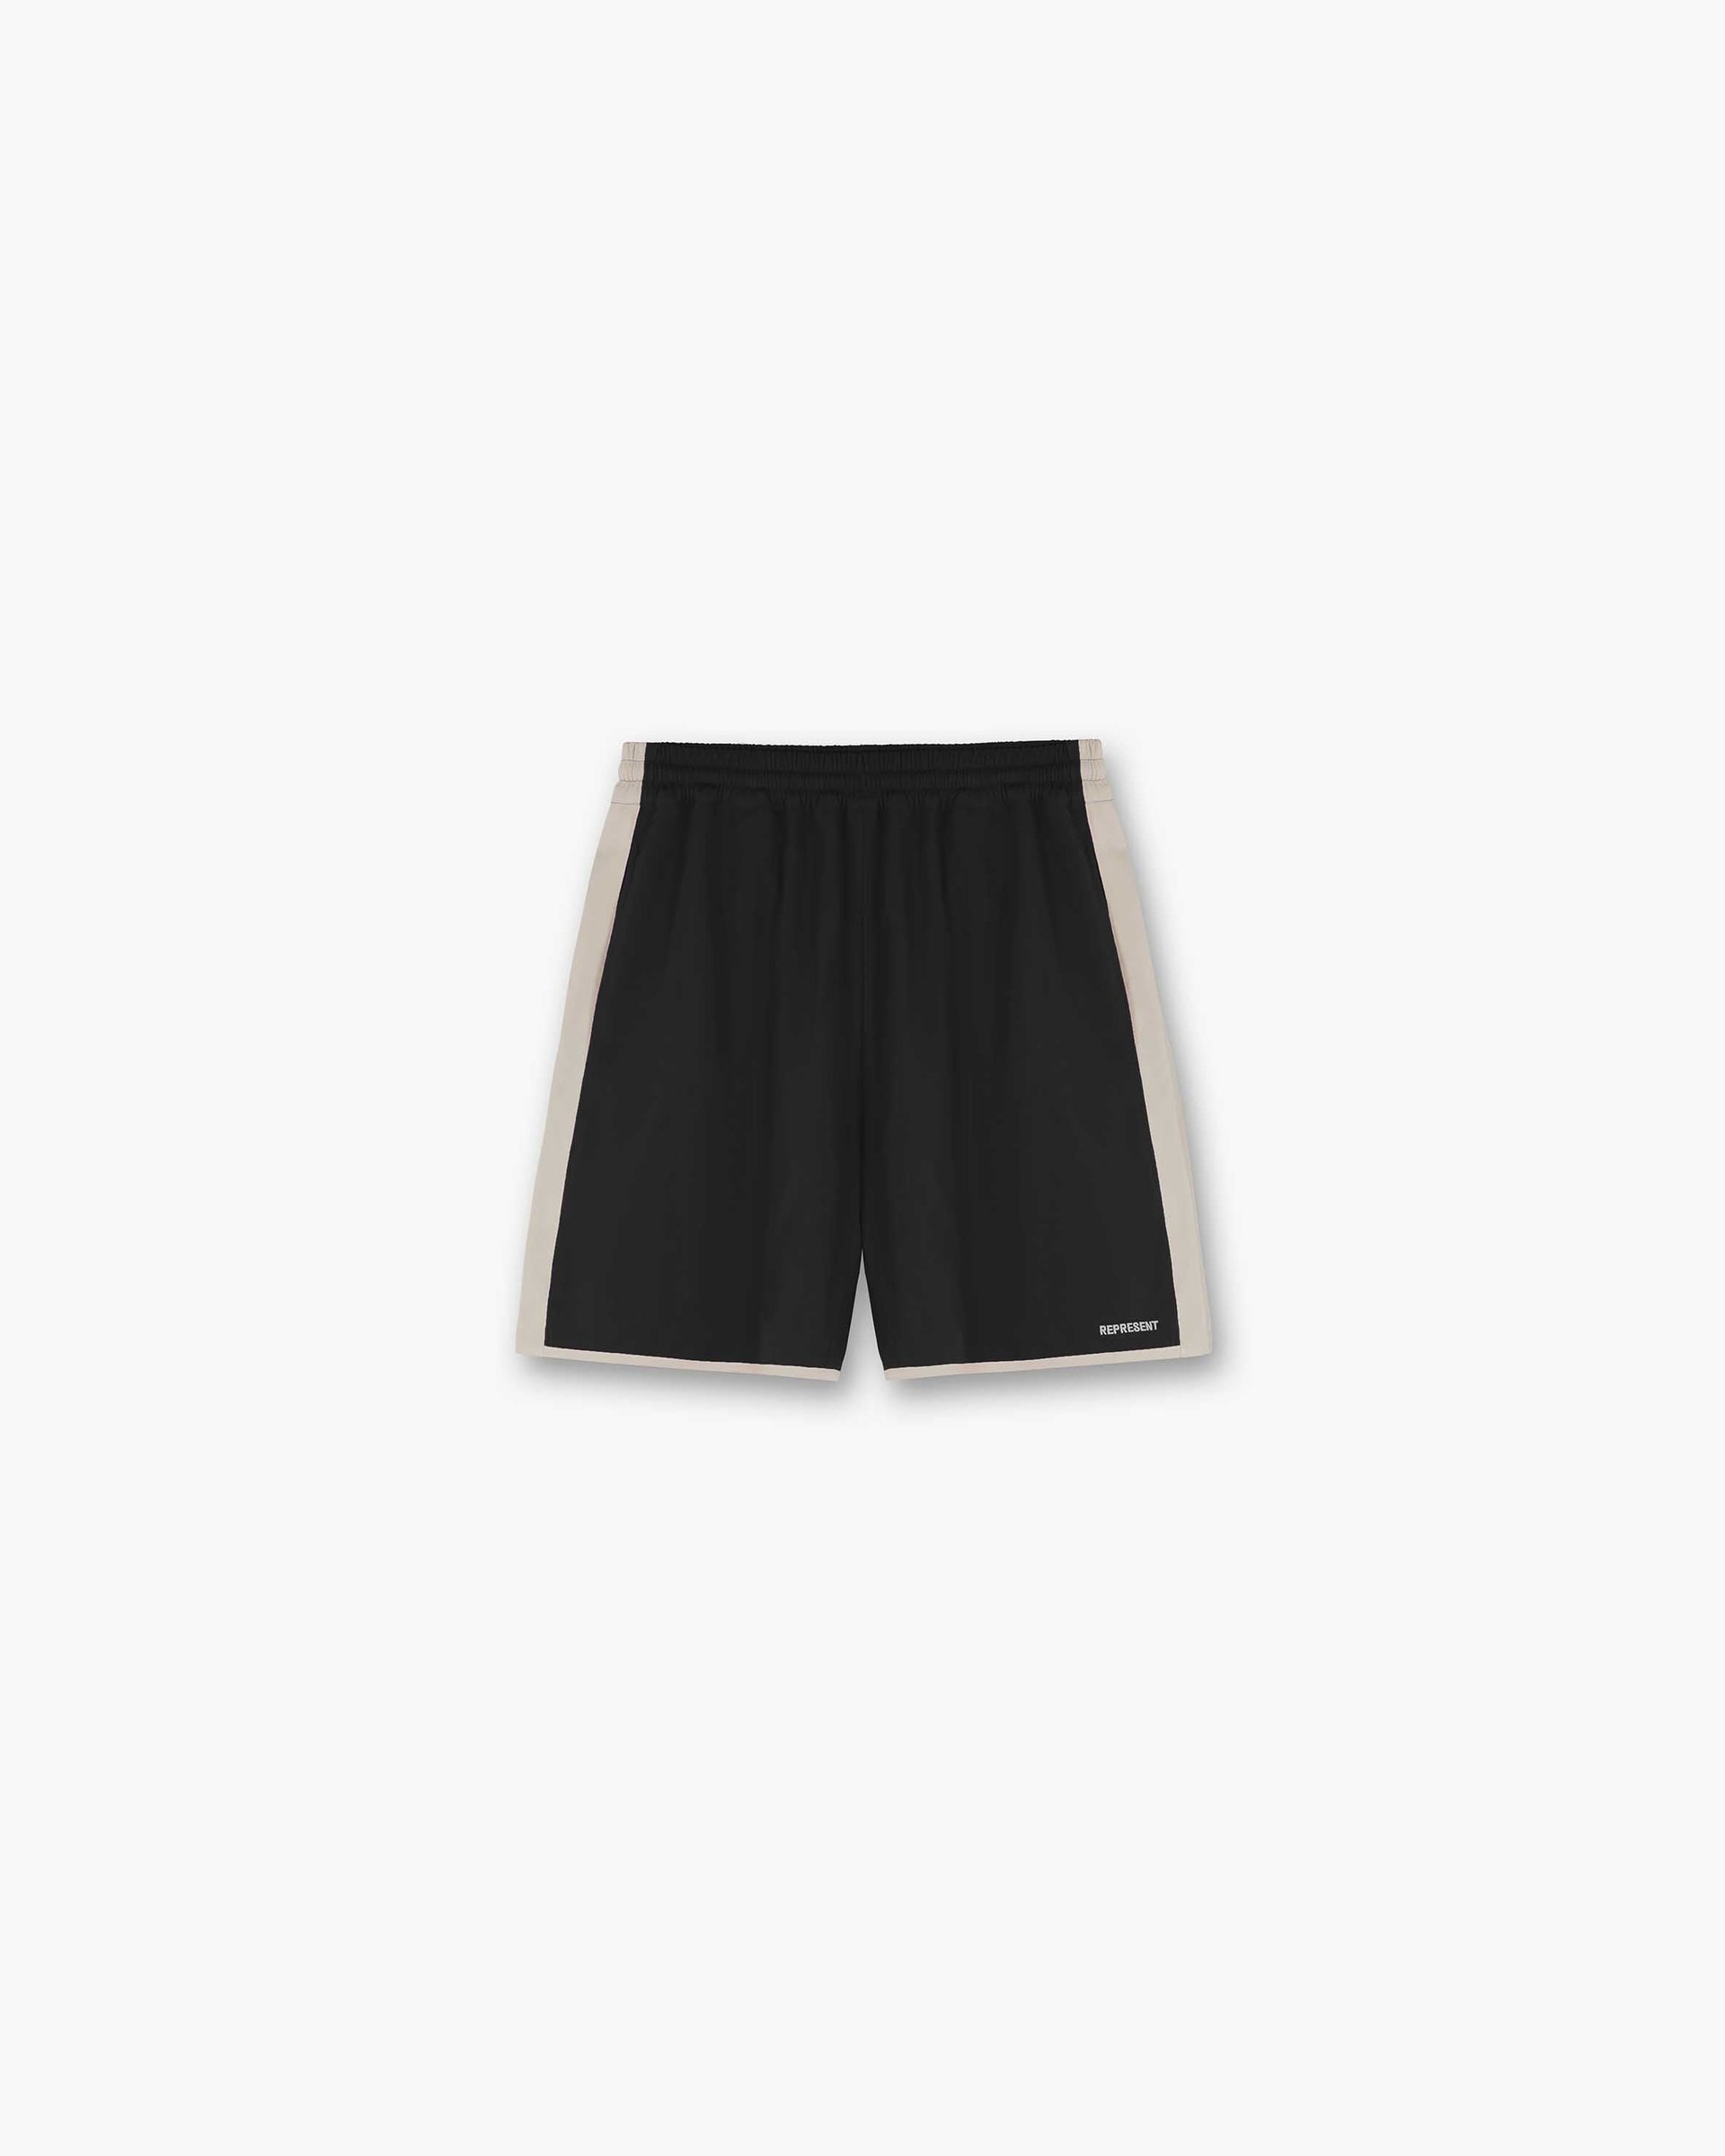 Souvenir Shorts | Black Shorts SS23 | Represent Clo